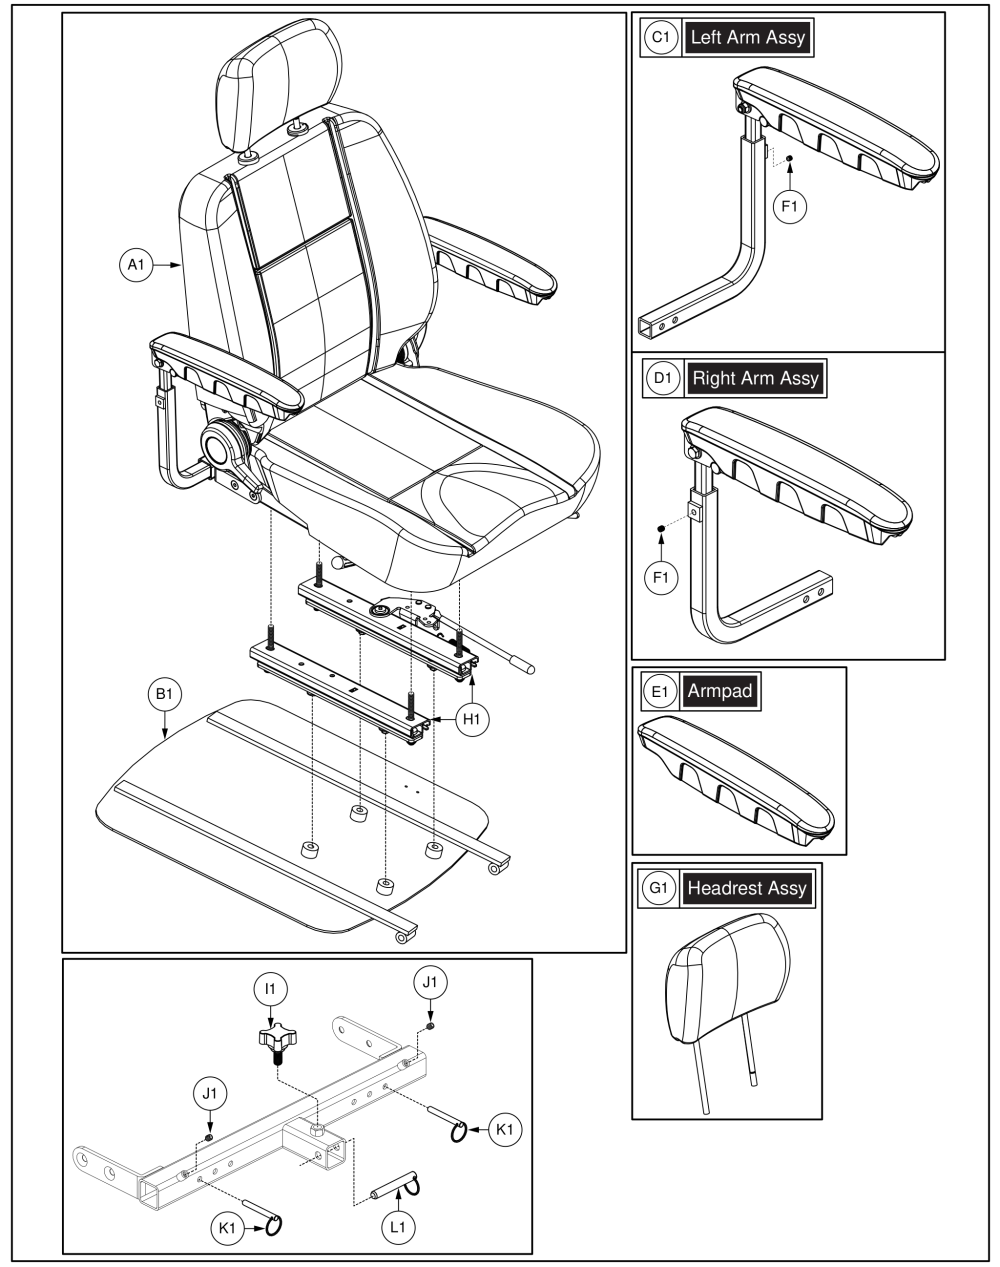 Seat Assy, Baja® Raptor 2 parts diagram